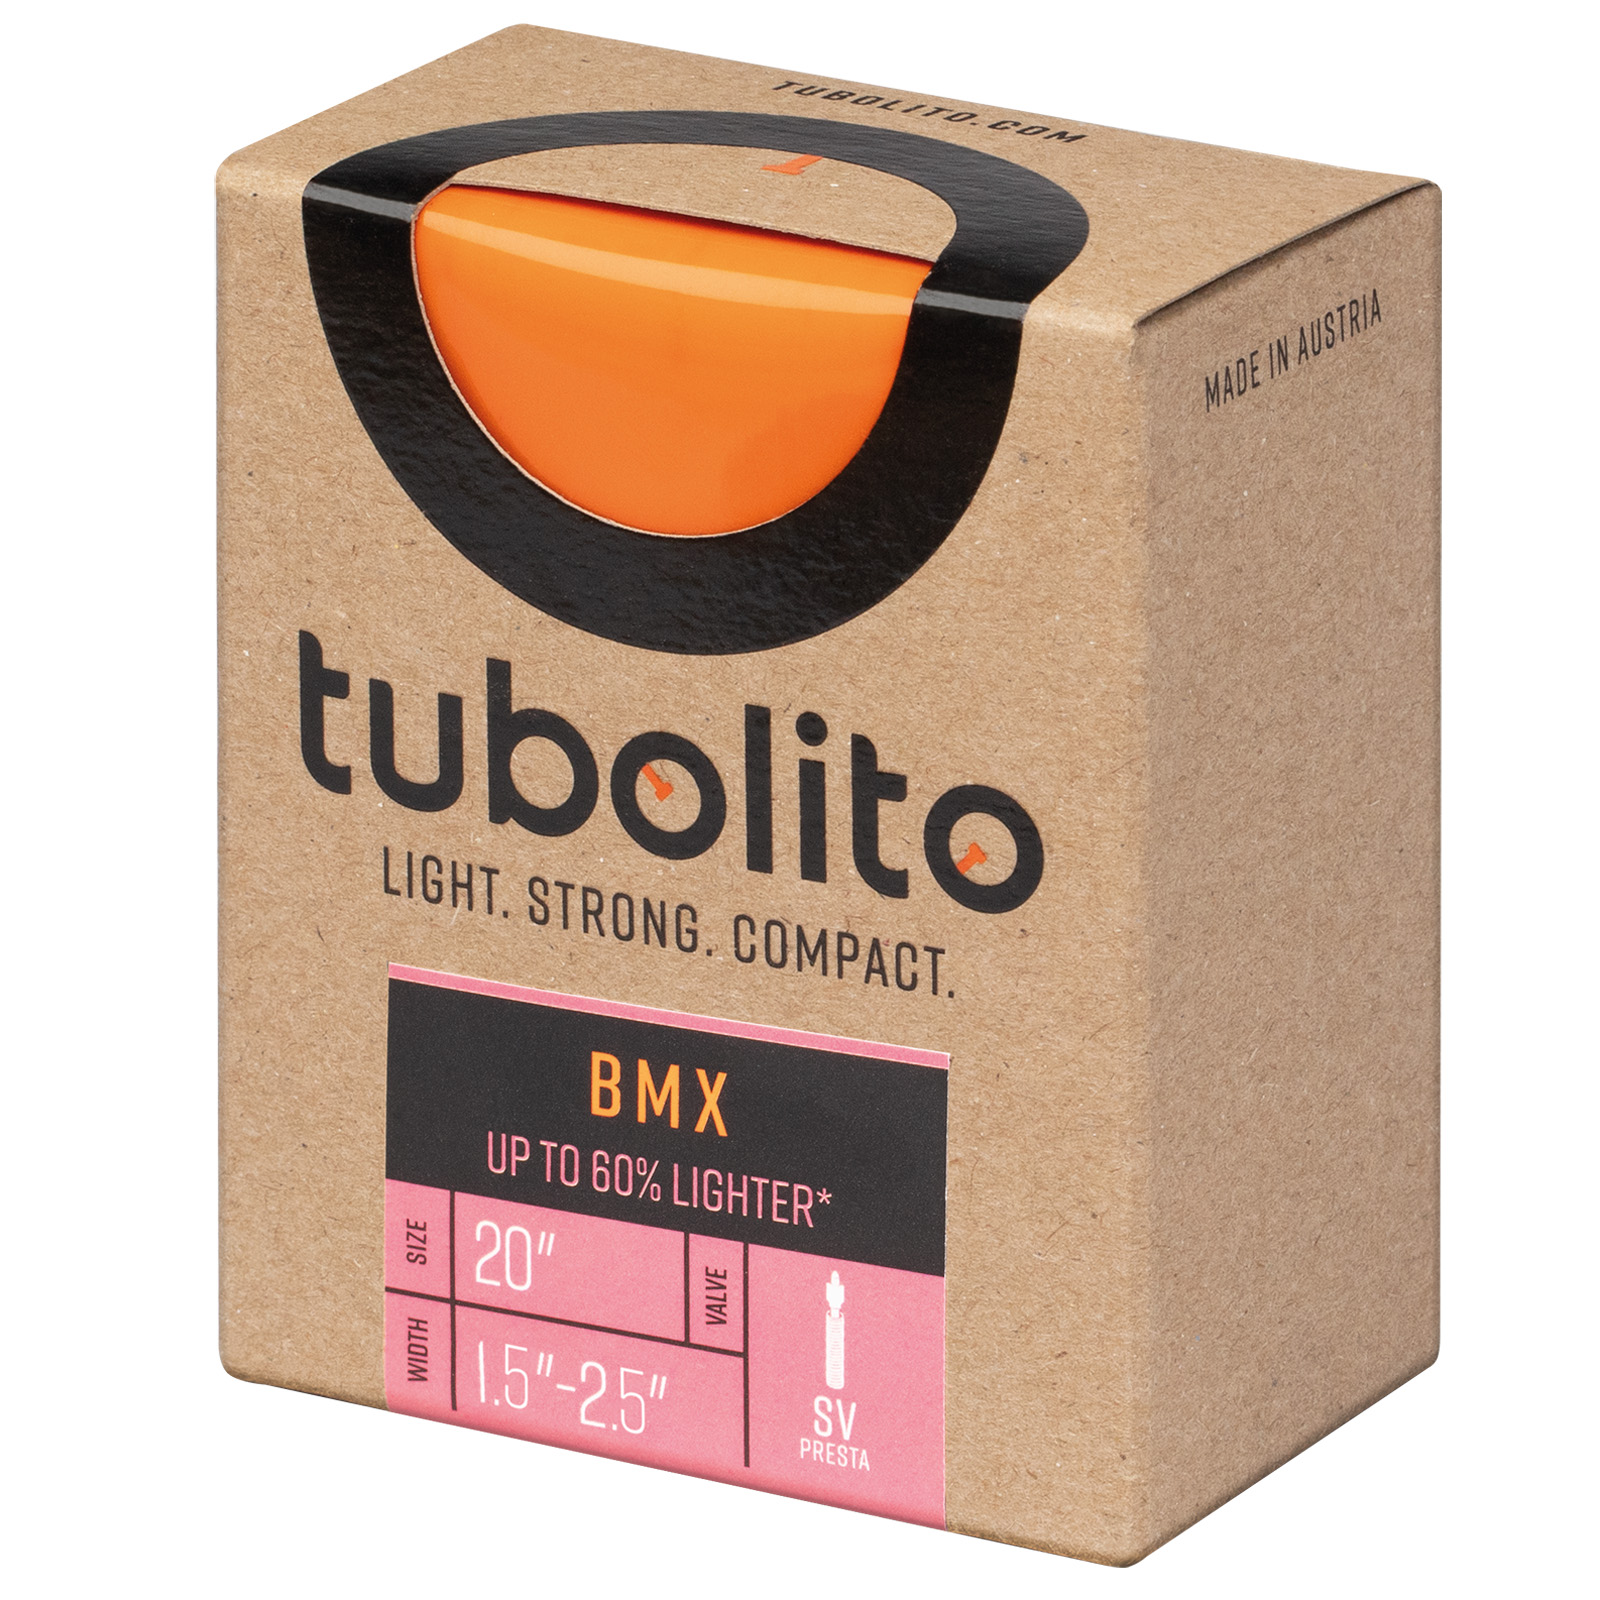 Productfoto van Tubolito BMX Binnenband - 20&quot; | 1.5-2.5&quot; | SV